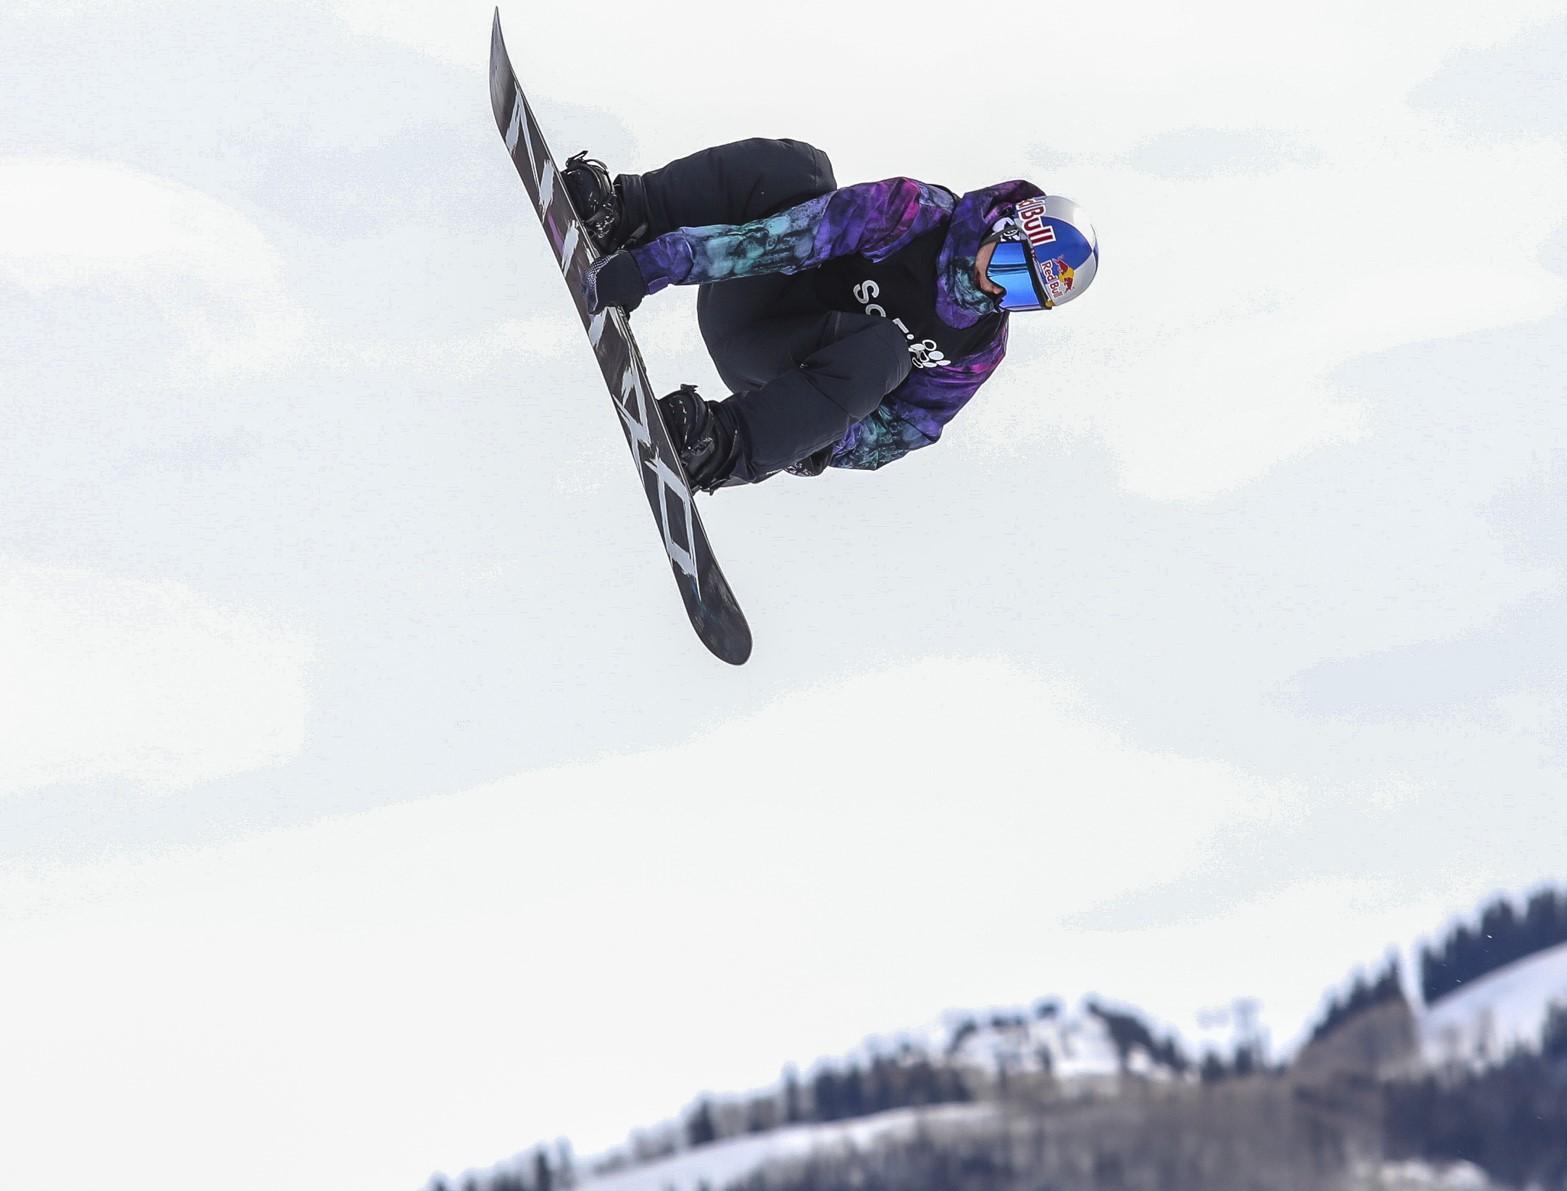 GODE MINNER: Marcus Kleveland (21) vant slopestyle i X Games Aspen i 2017 og 2018 (bildet). Lørdag kveld norsk tid er han igjen blant gullfavorittene i Colorado-byens prestisjekonkurranse på brett og ski.